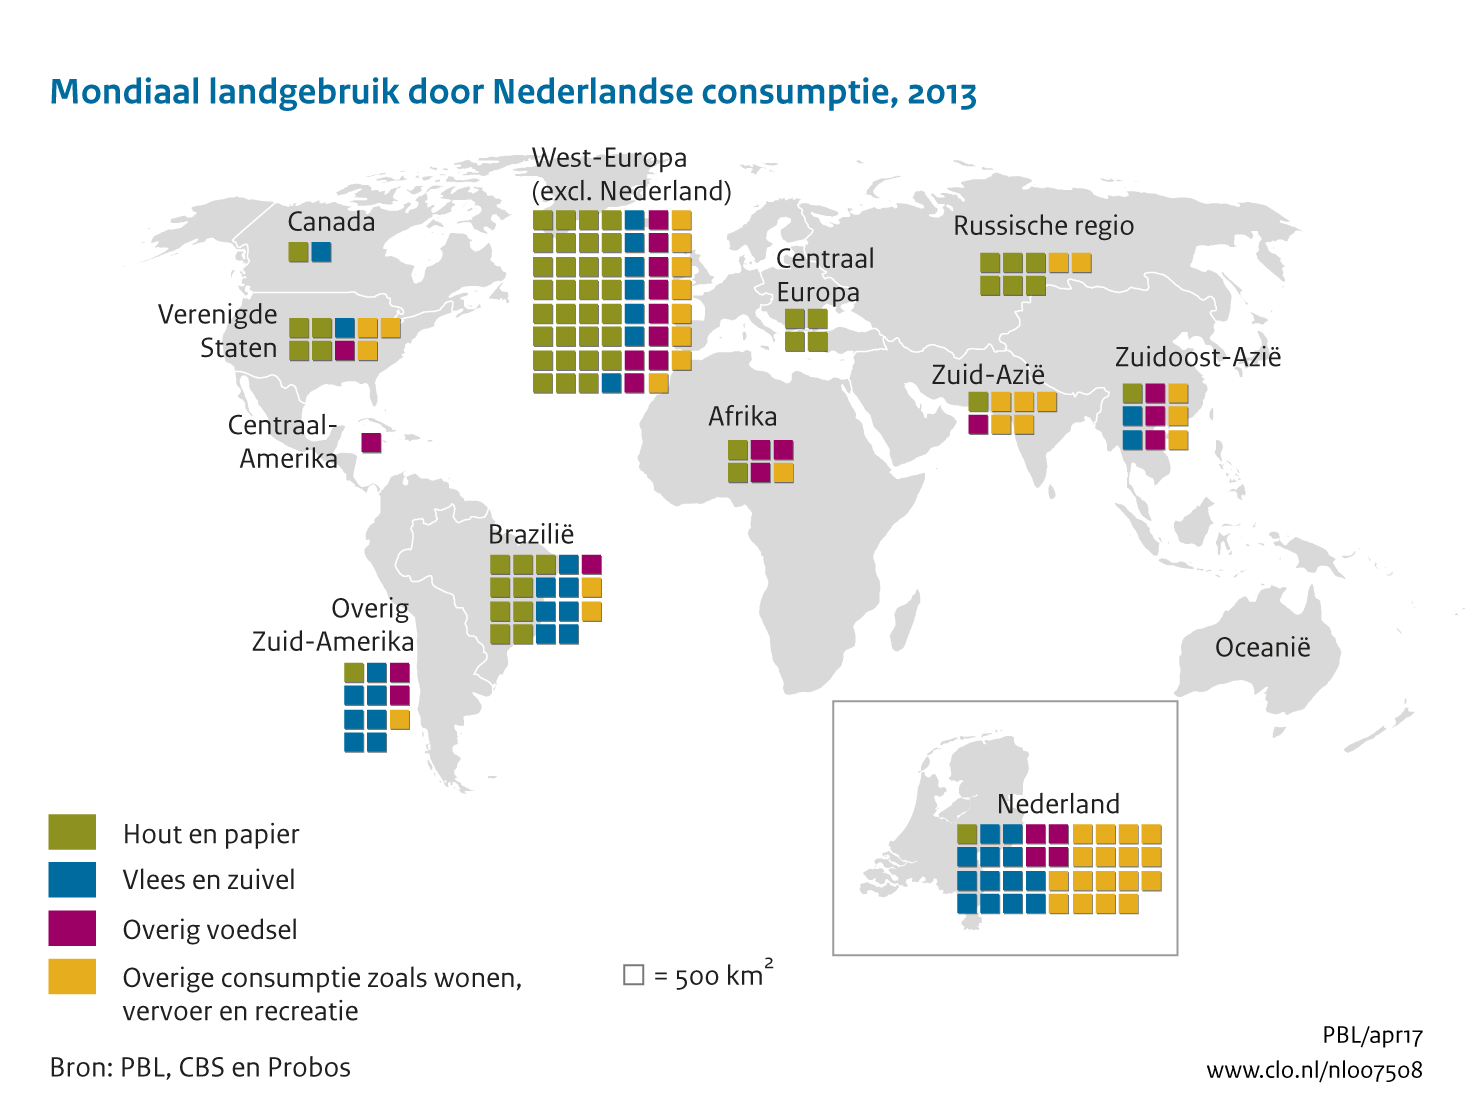 Figuur  Landgebruik door Nederlandse consumptie naar regio. In de rest van de tekst wordt deze figuur uitgebreider uitgelegd.